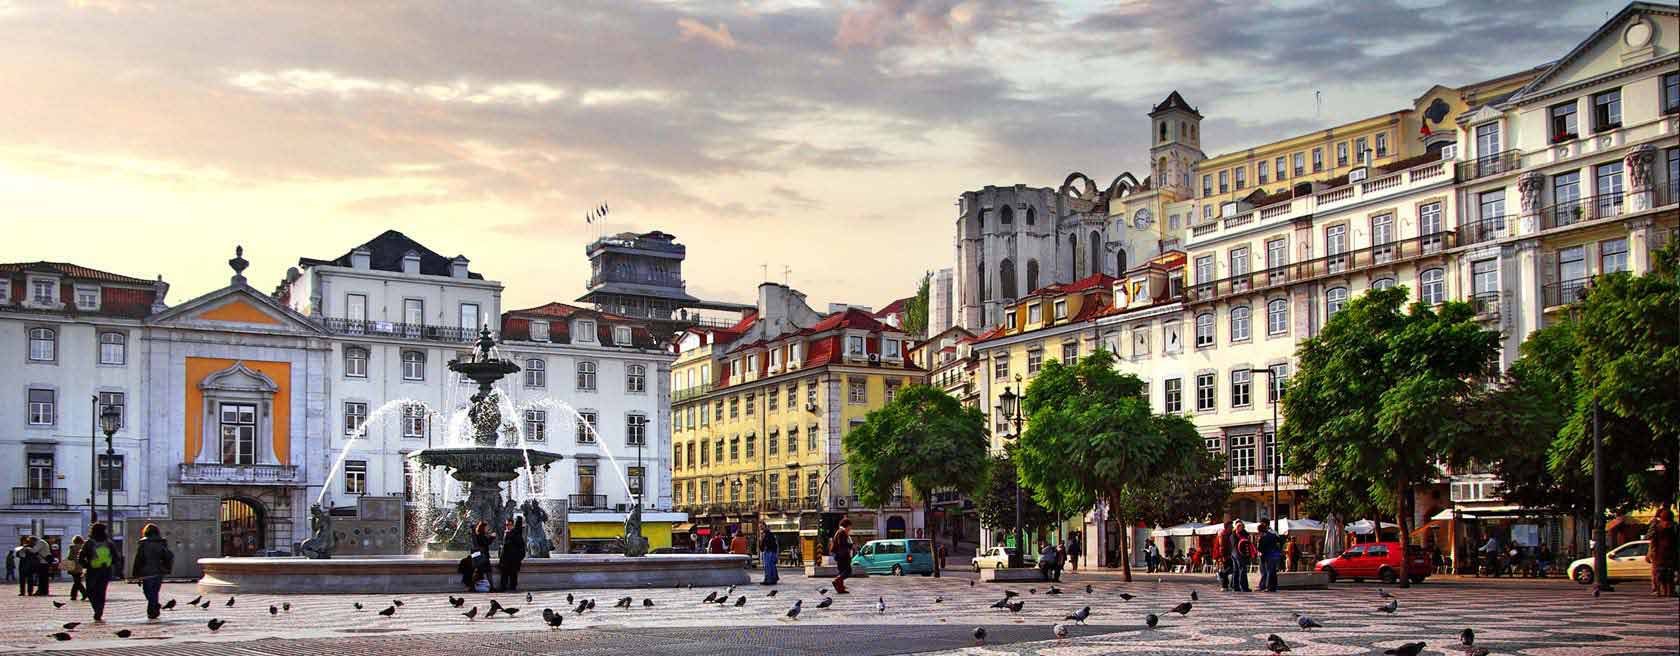 Lisboa começa a cobrar 2 euros de taxa turística